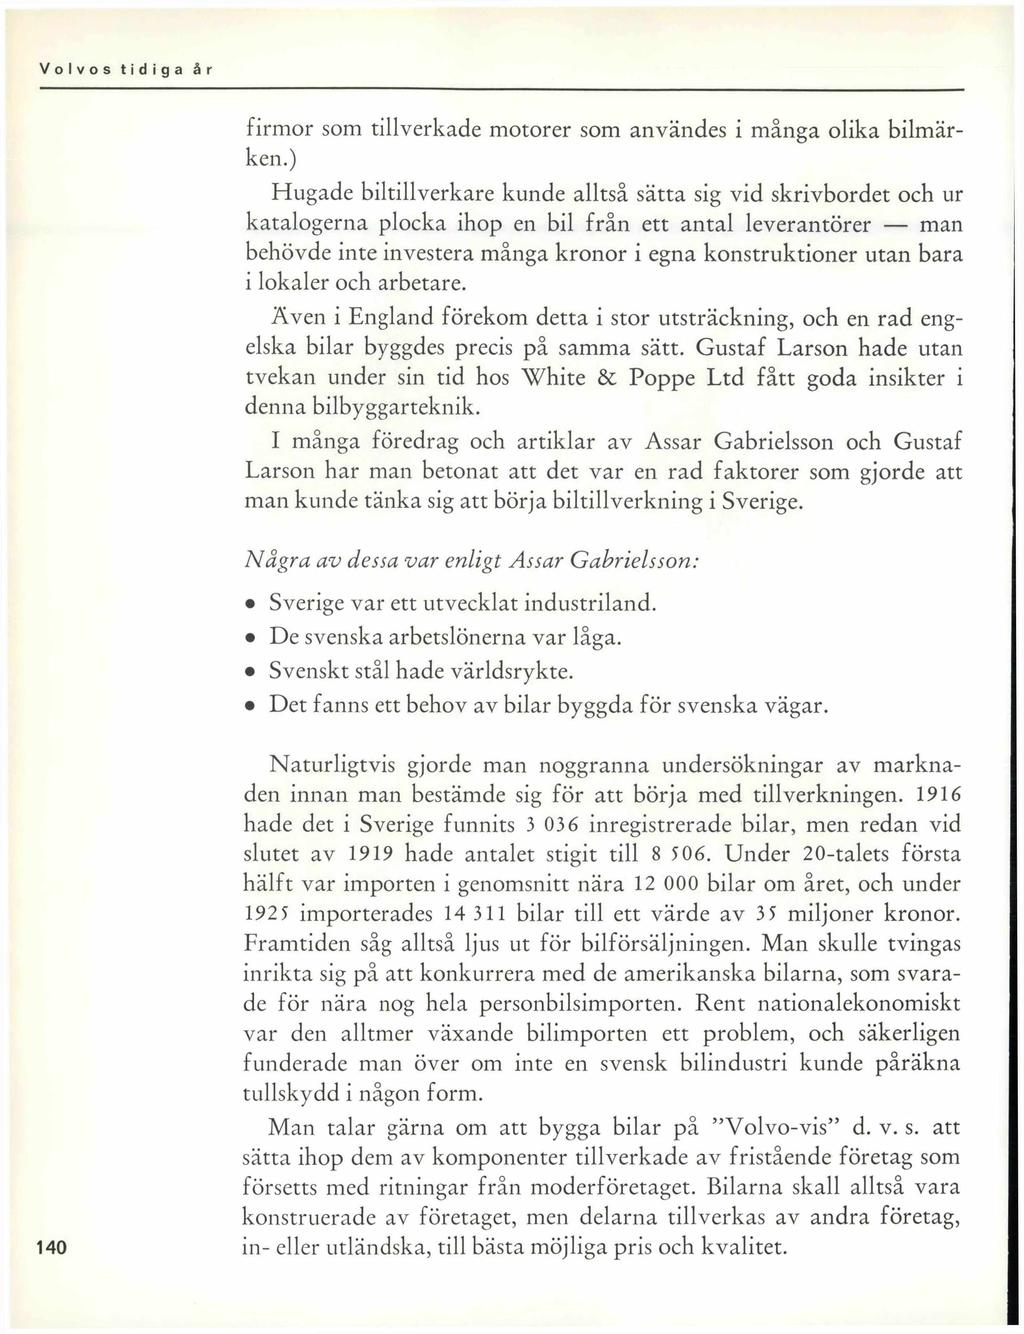 Volvos tidiga år. av Björn-Eric Lindh - PDF Free Download